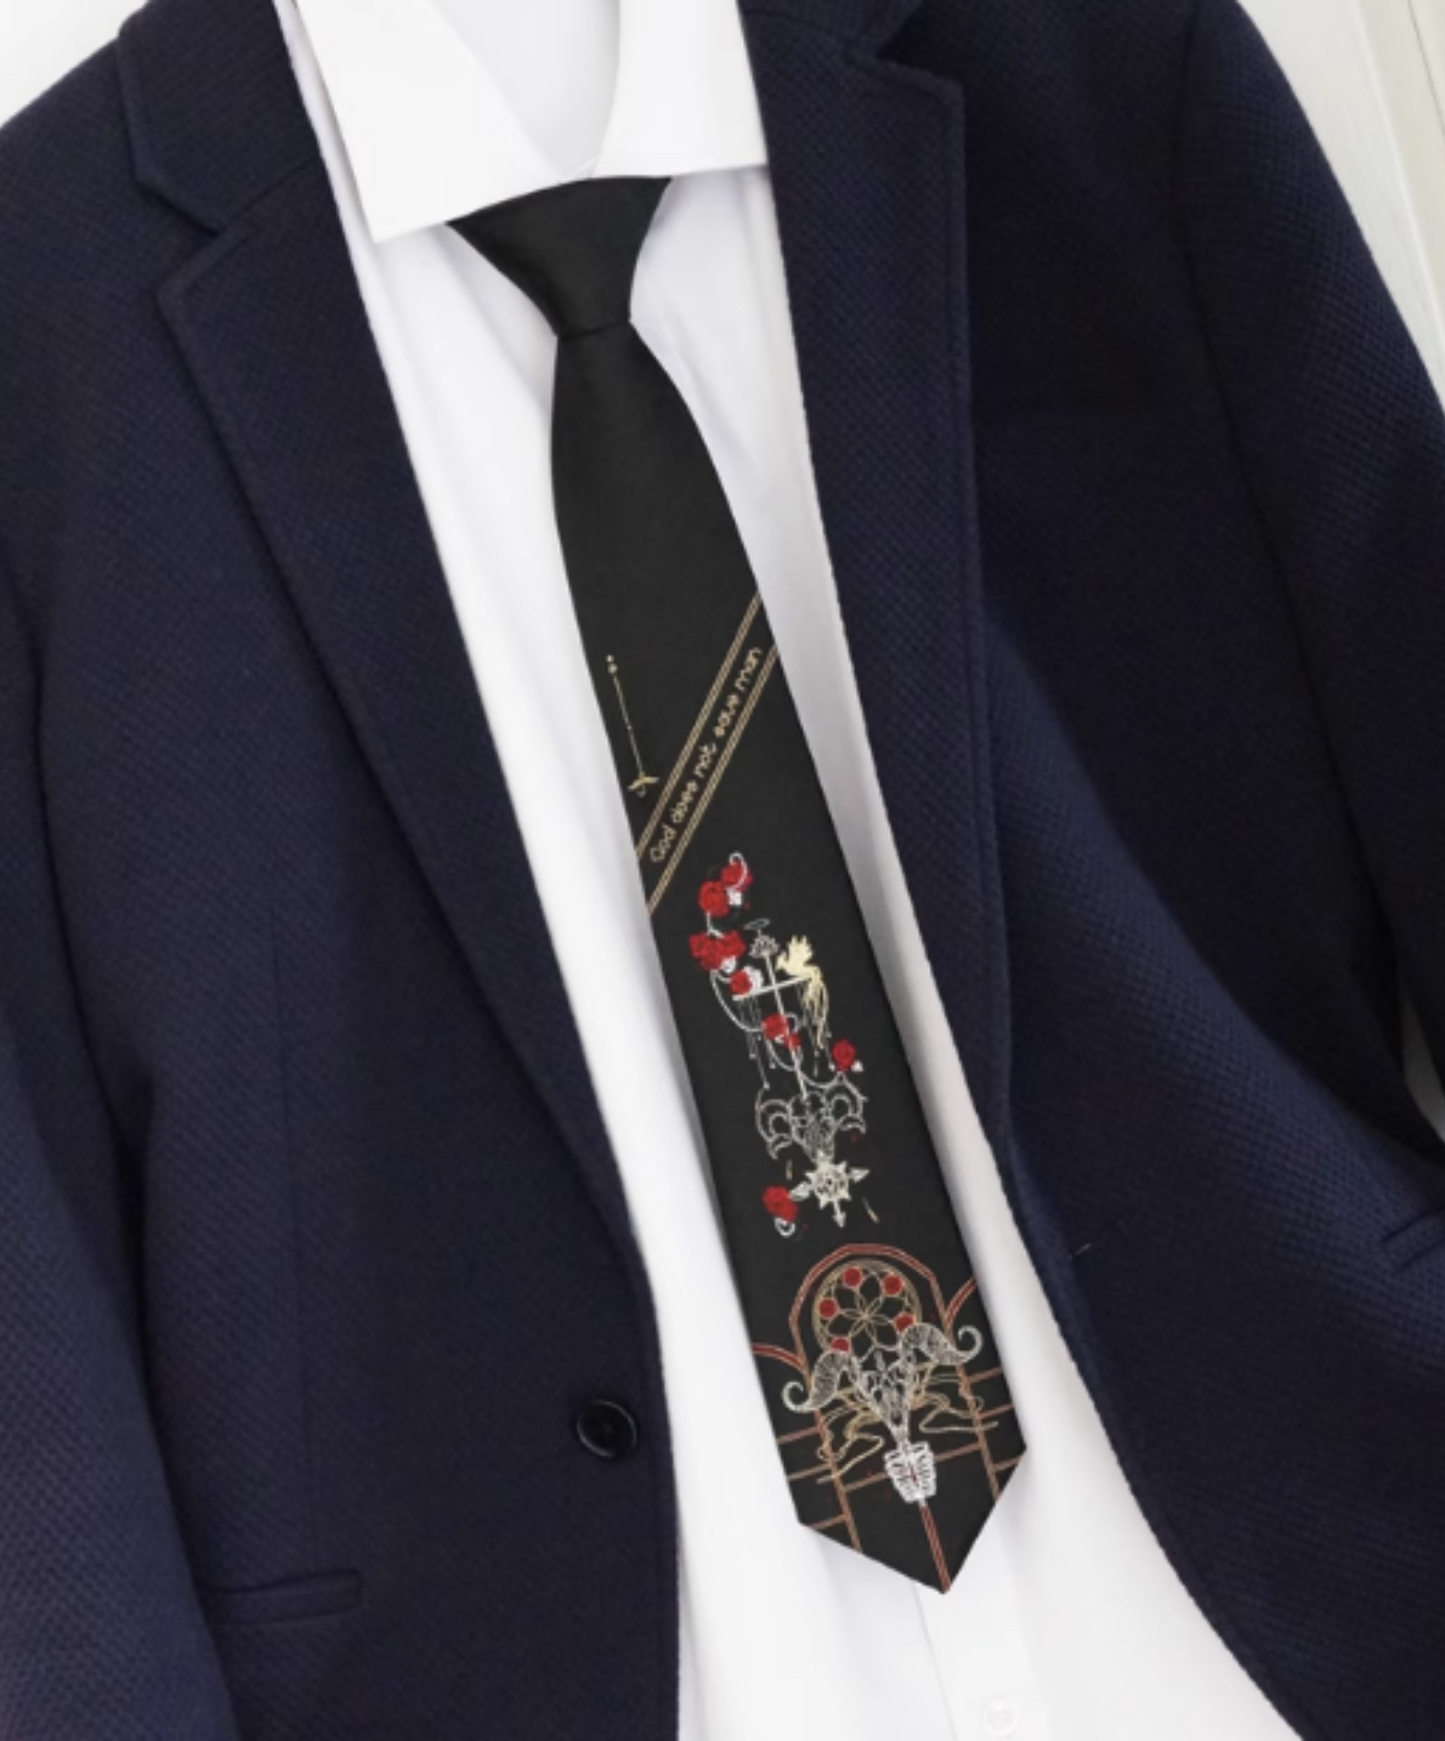 imprisoned cult design necktie EN1236